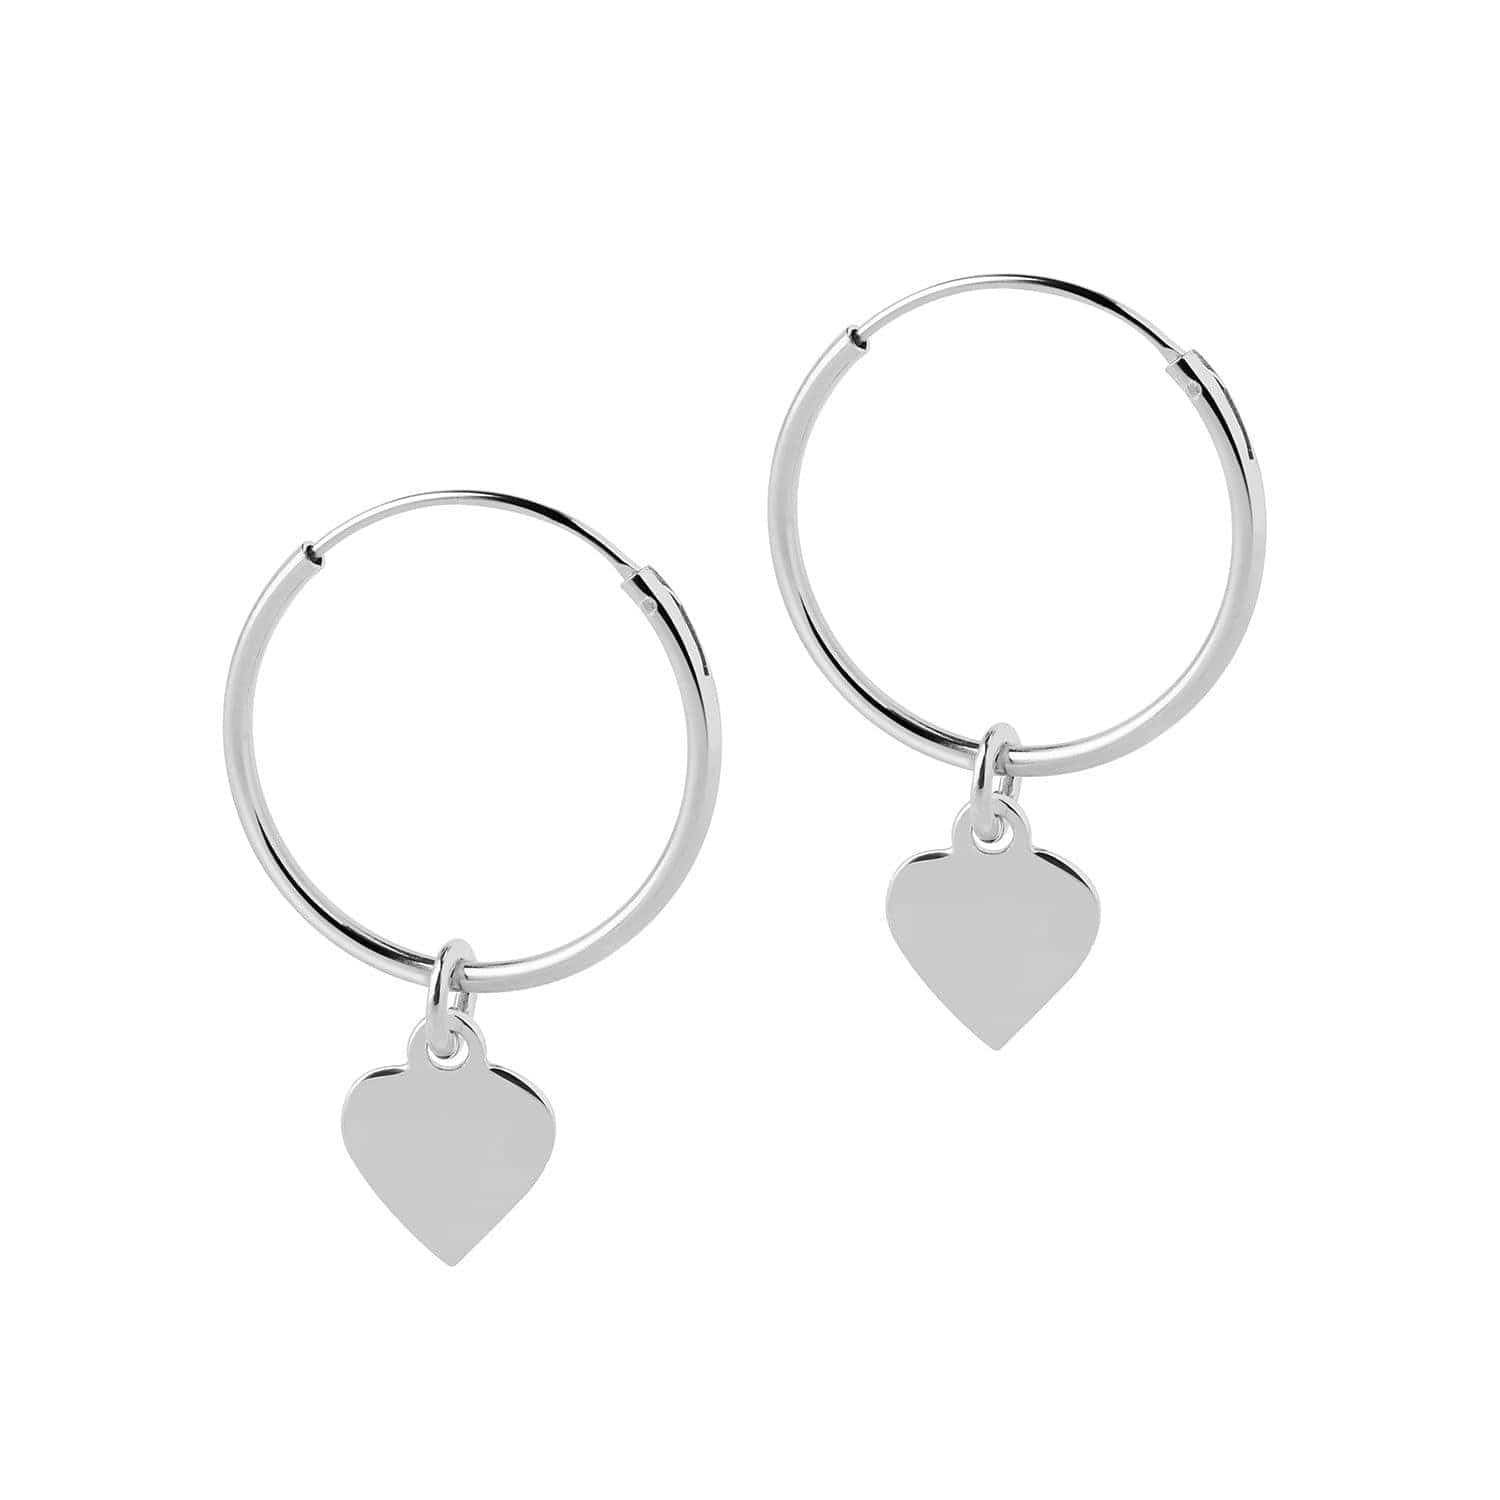 Silver Hoop Earrings with Heart 18 MM